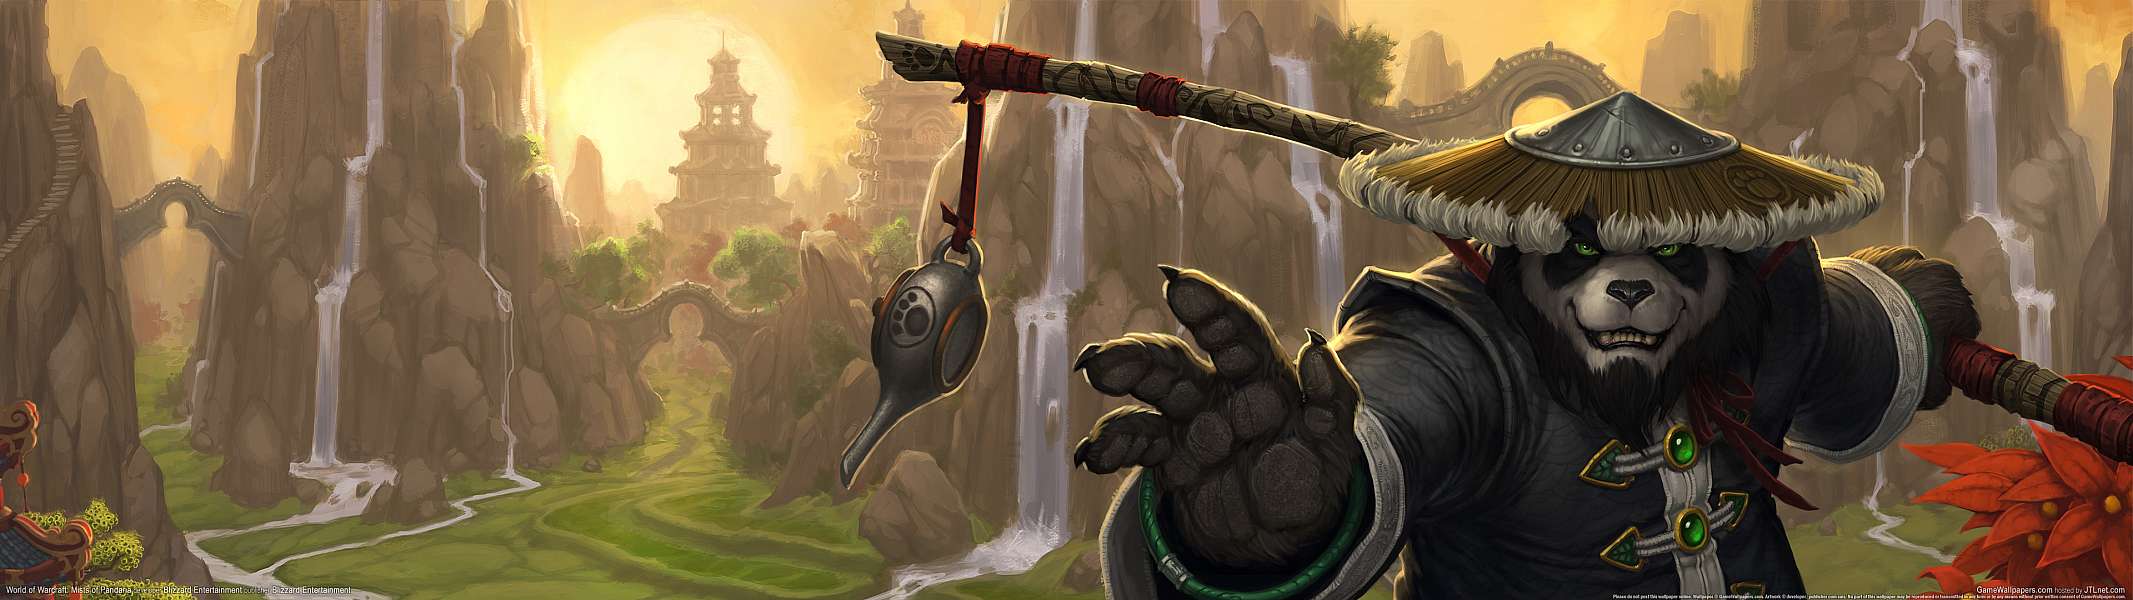 World of Warcraft: Mists of Pandaria dual screen fond d'cran